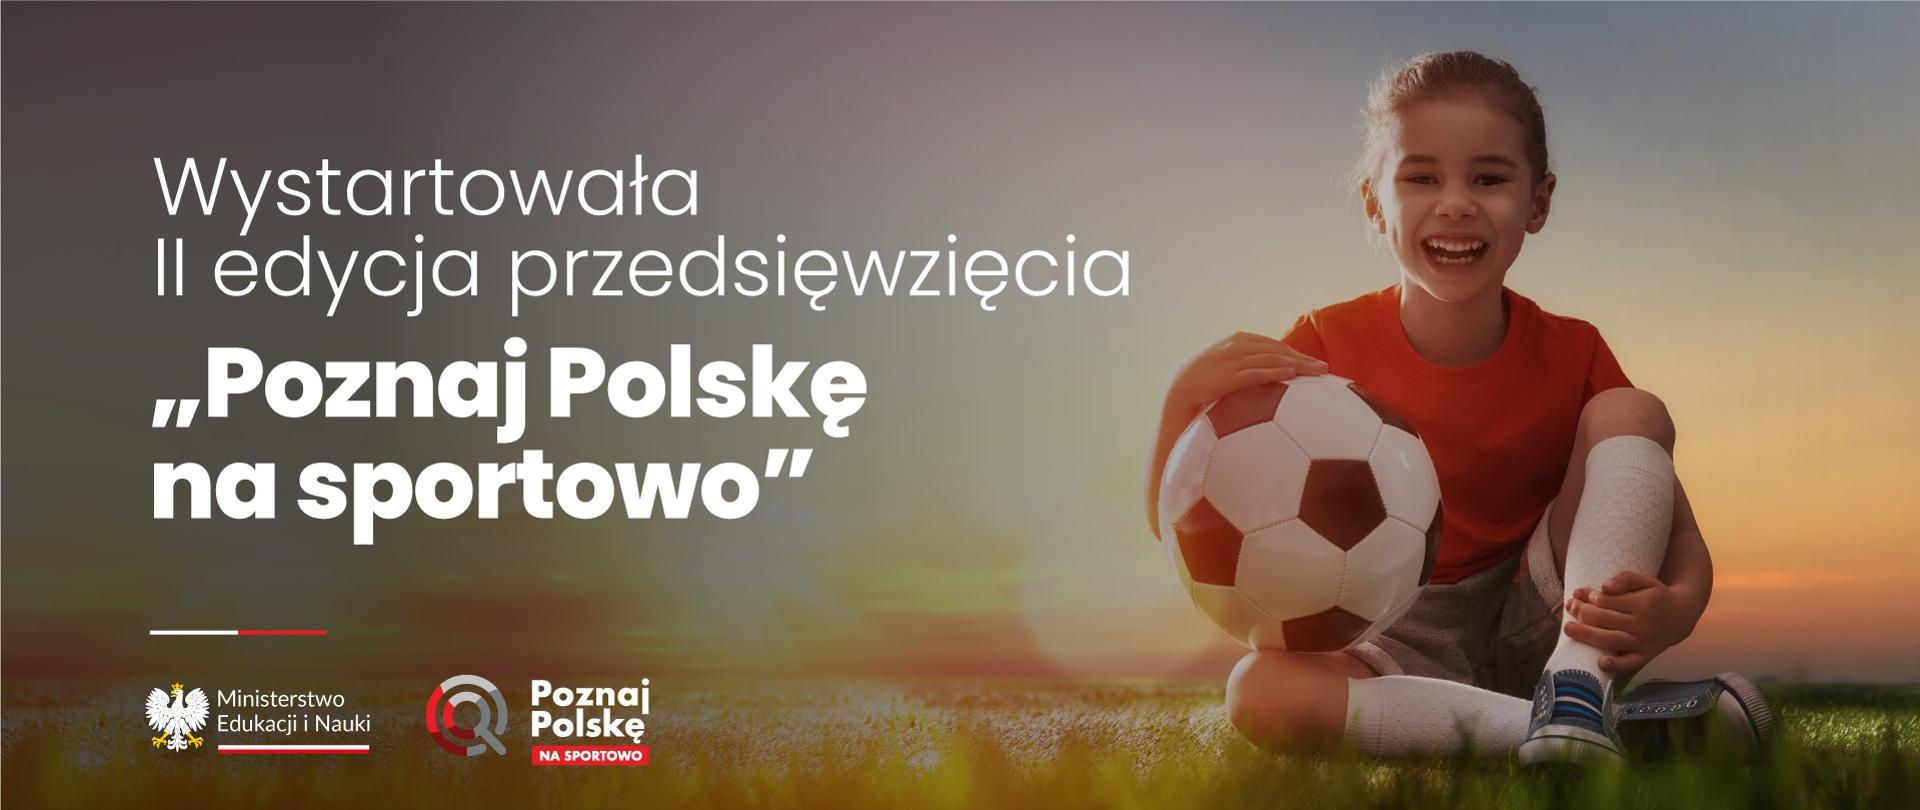 Zdjęcie - roześmiana dziewczynka w sportowym ubraniu siedzi na trawniku, trzyma piłkę opartą o kolano, obok napis Wystartowała II edycja przedsięwzięcia "Poznaj Polskę na sportowo".